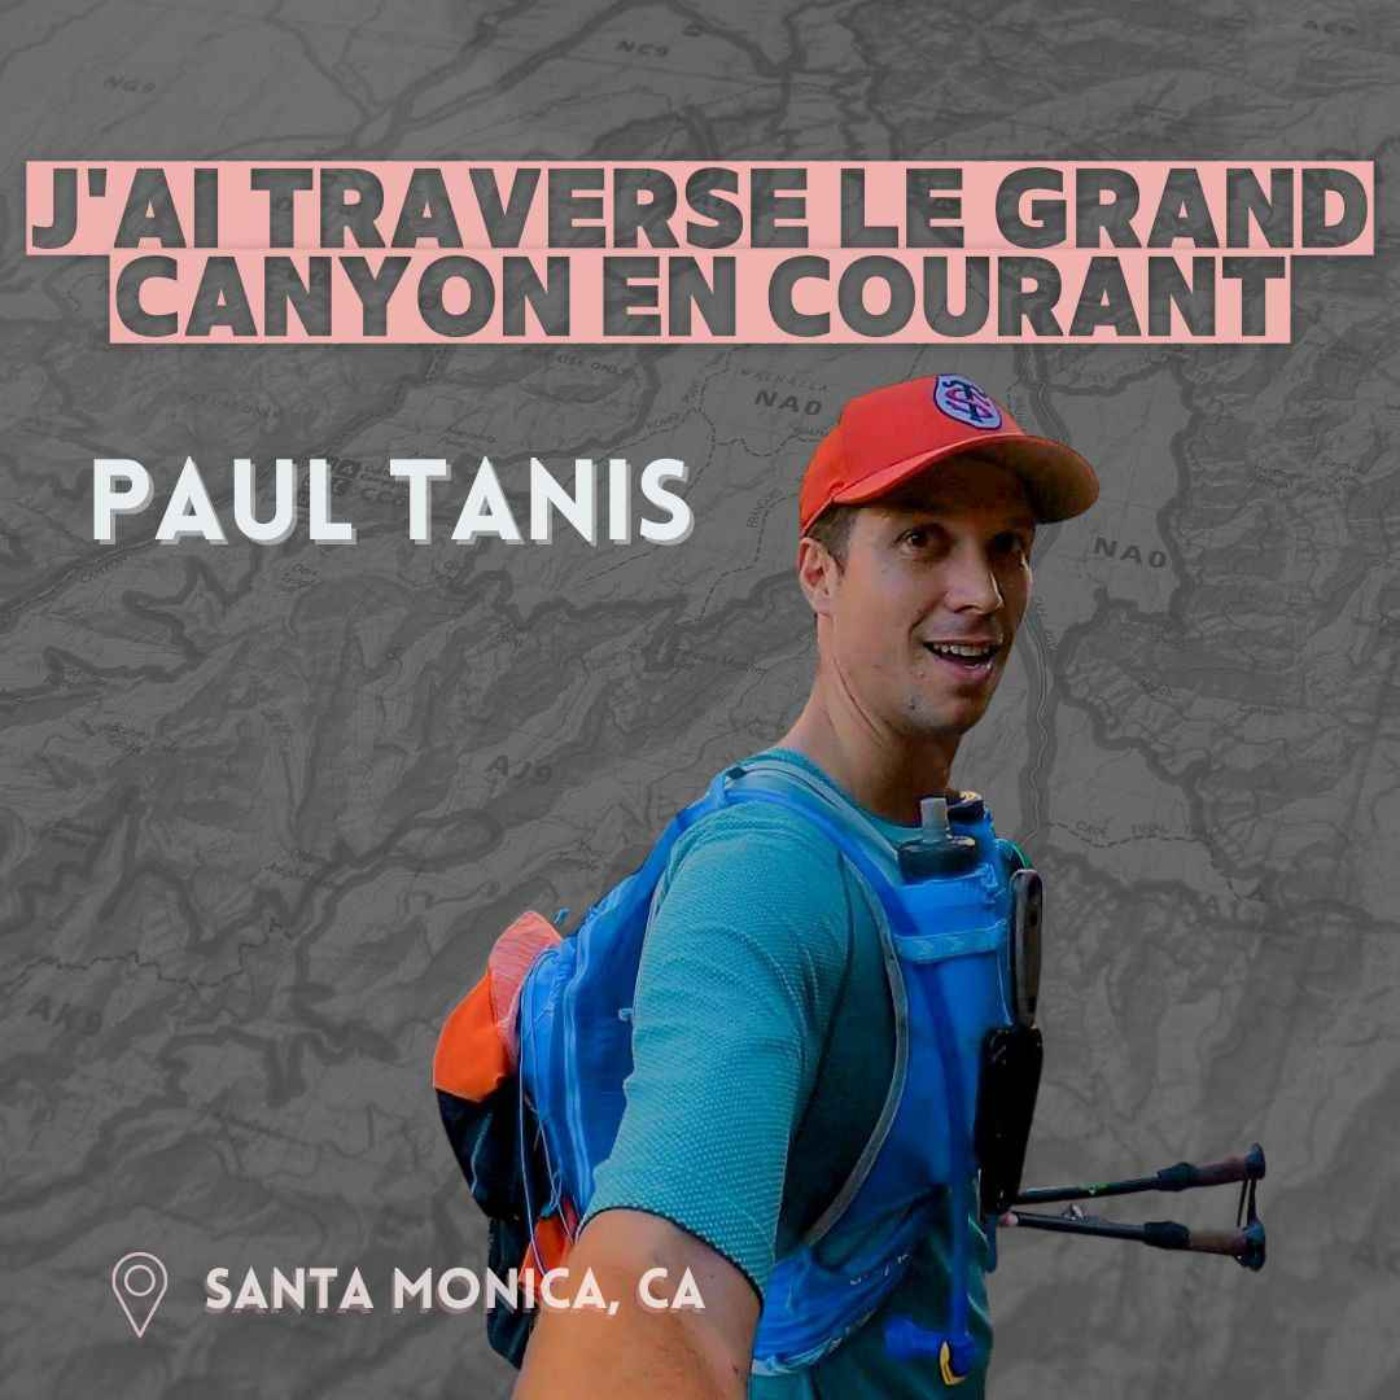 Paul Tanis : J'ai traversé le Grand Canyon (aller-retour) en courant